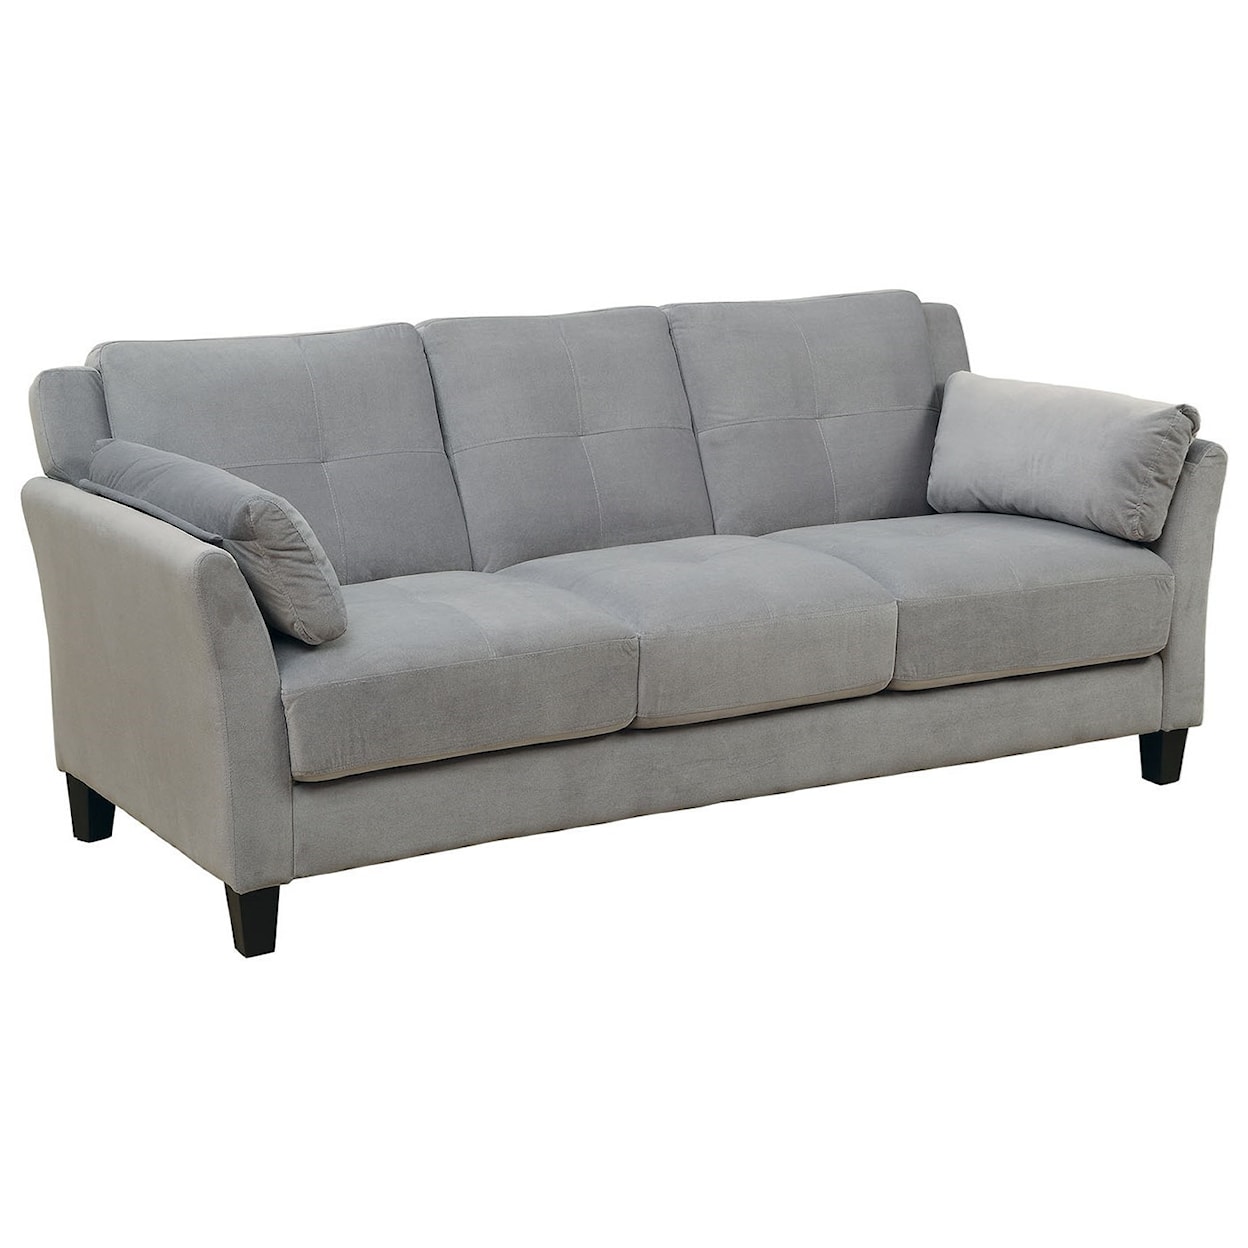 Furniture of America Ysabel Sofa